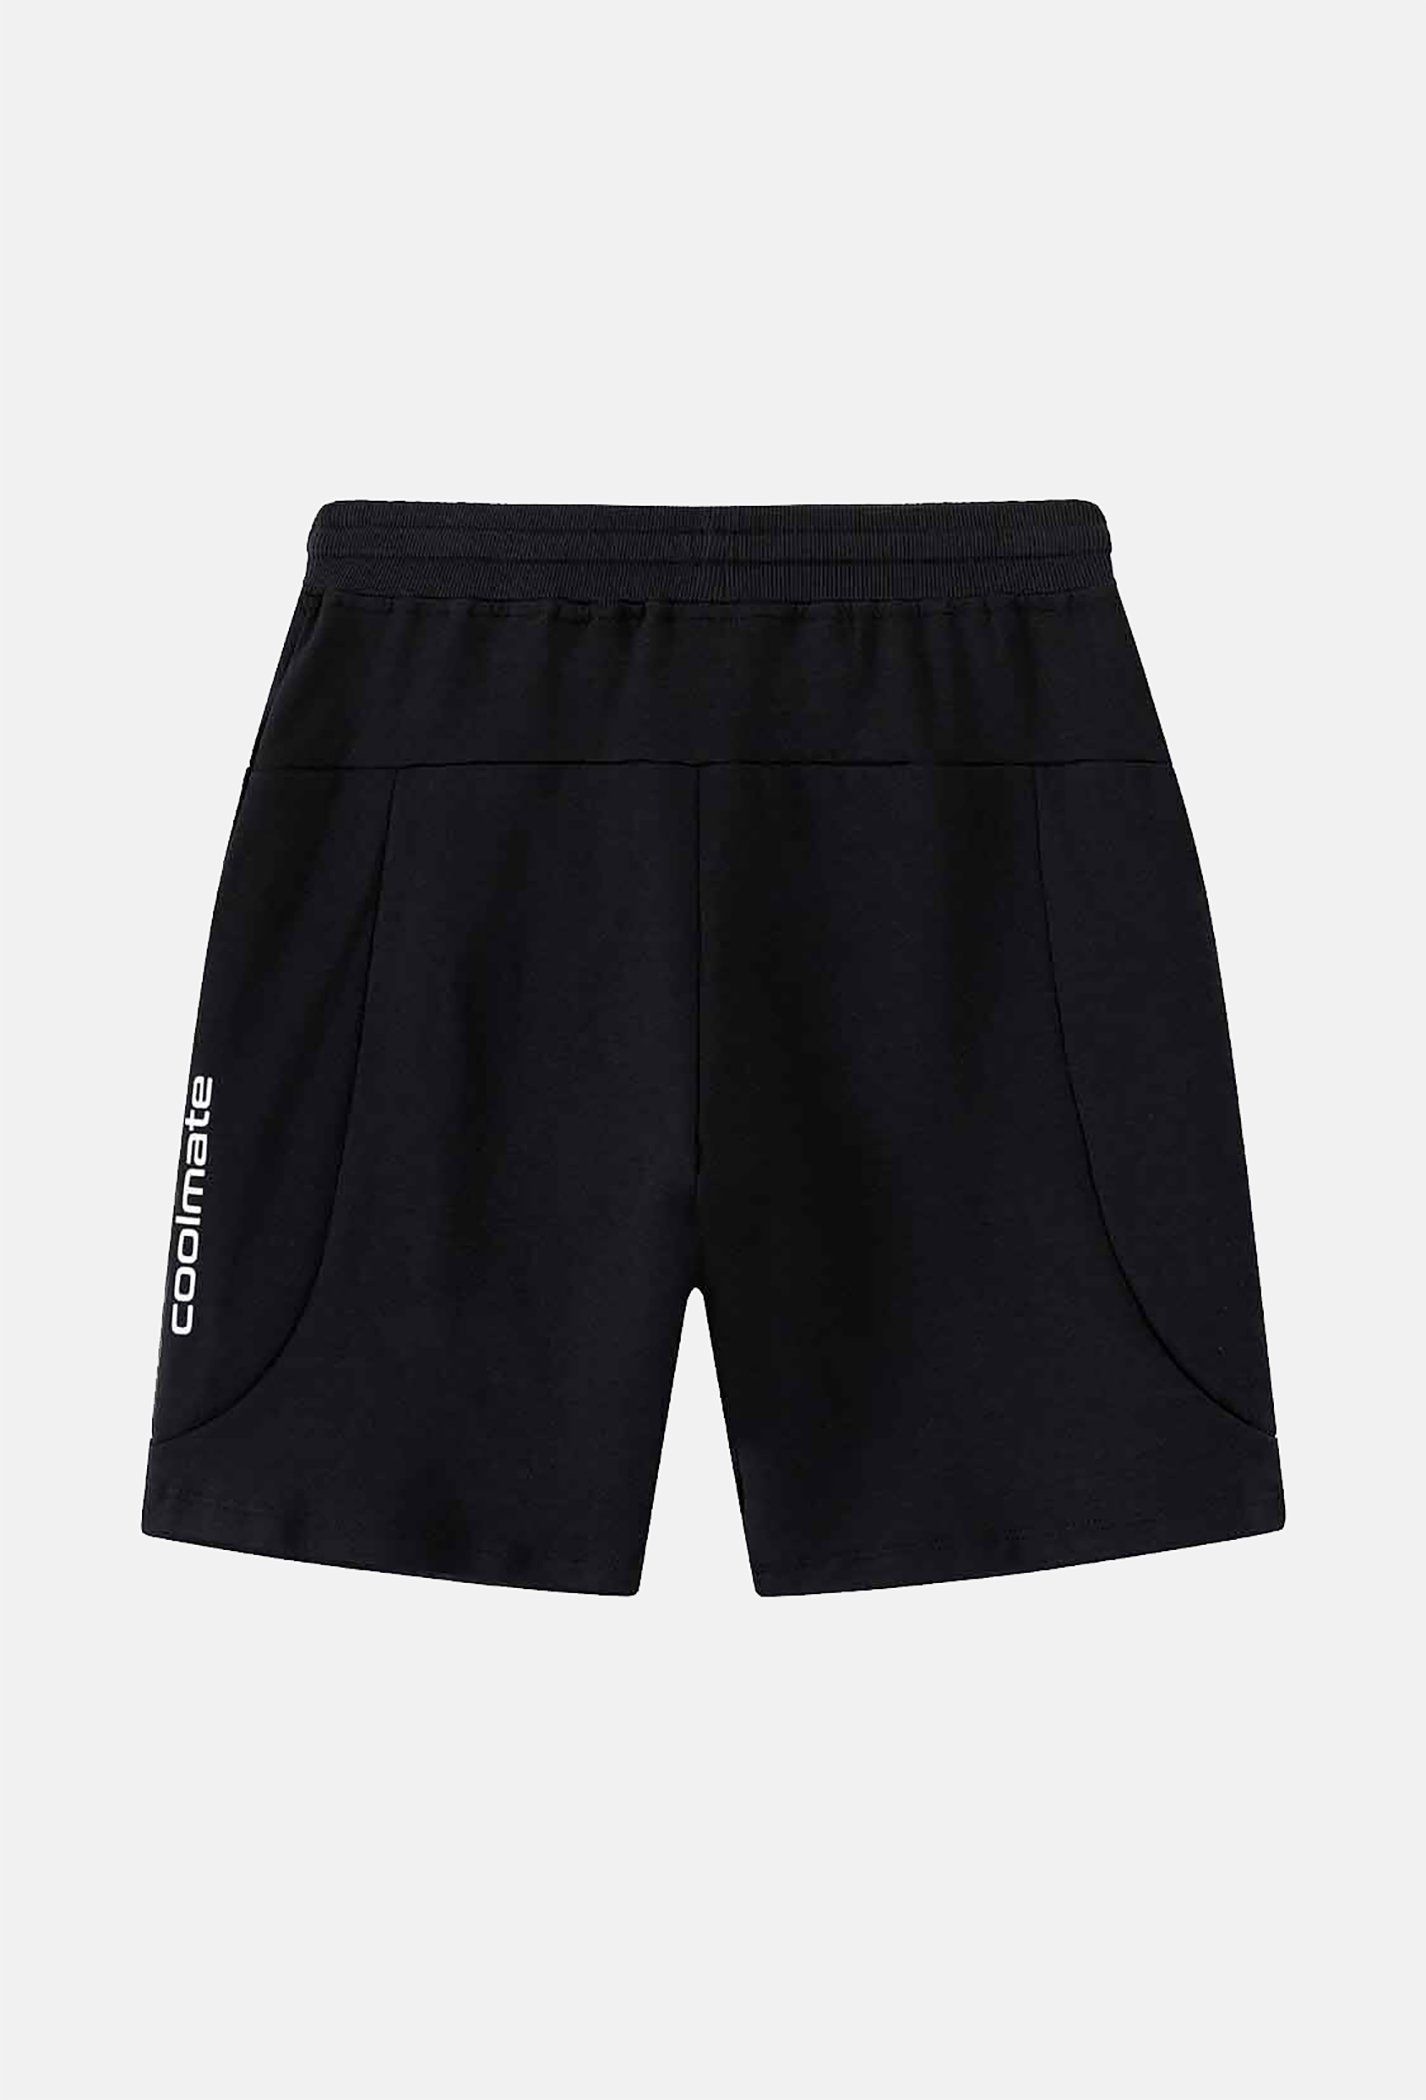 SĂN DEAL - Quần Shorts nam Easy Active màu đen (Form nhỏ) Đen 5